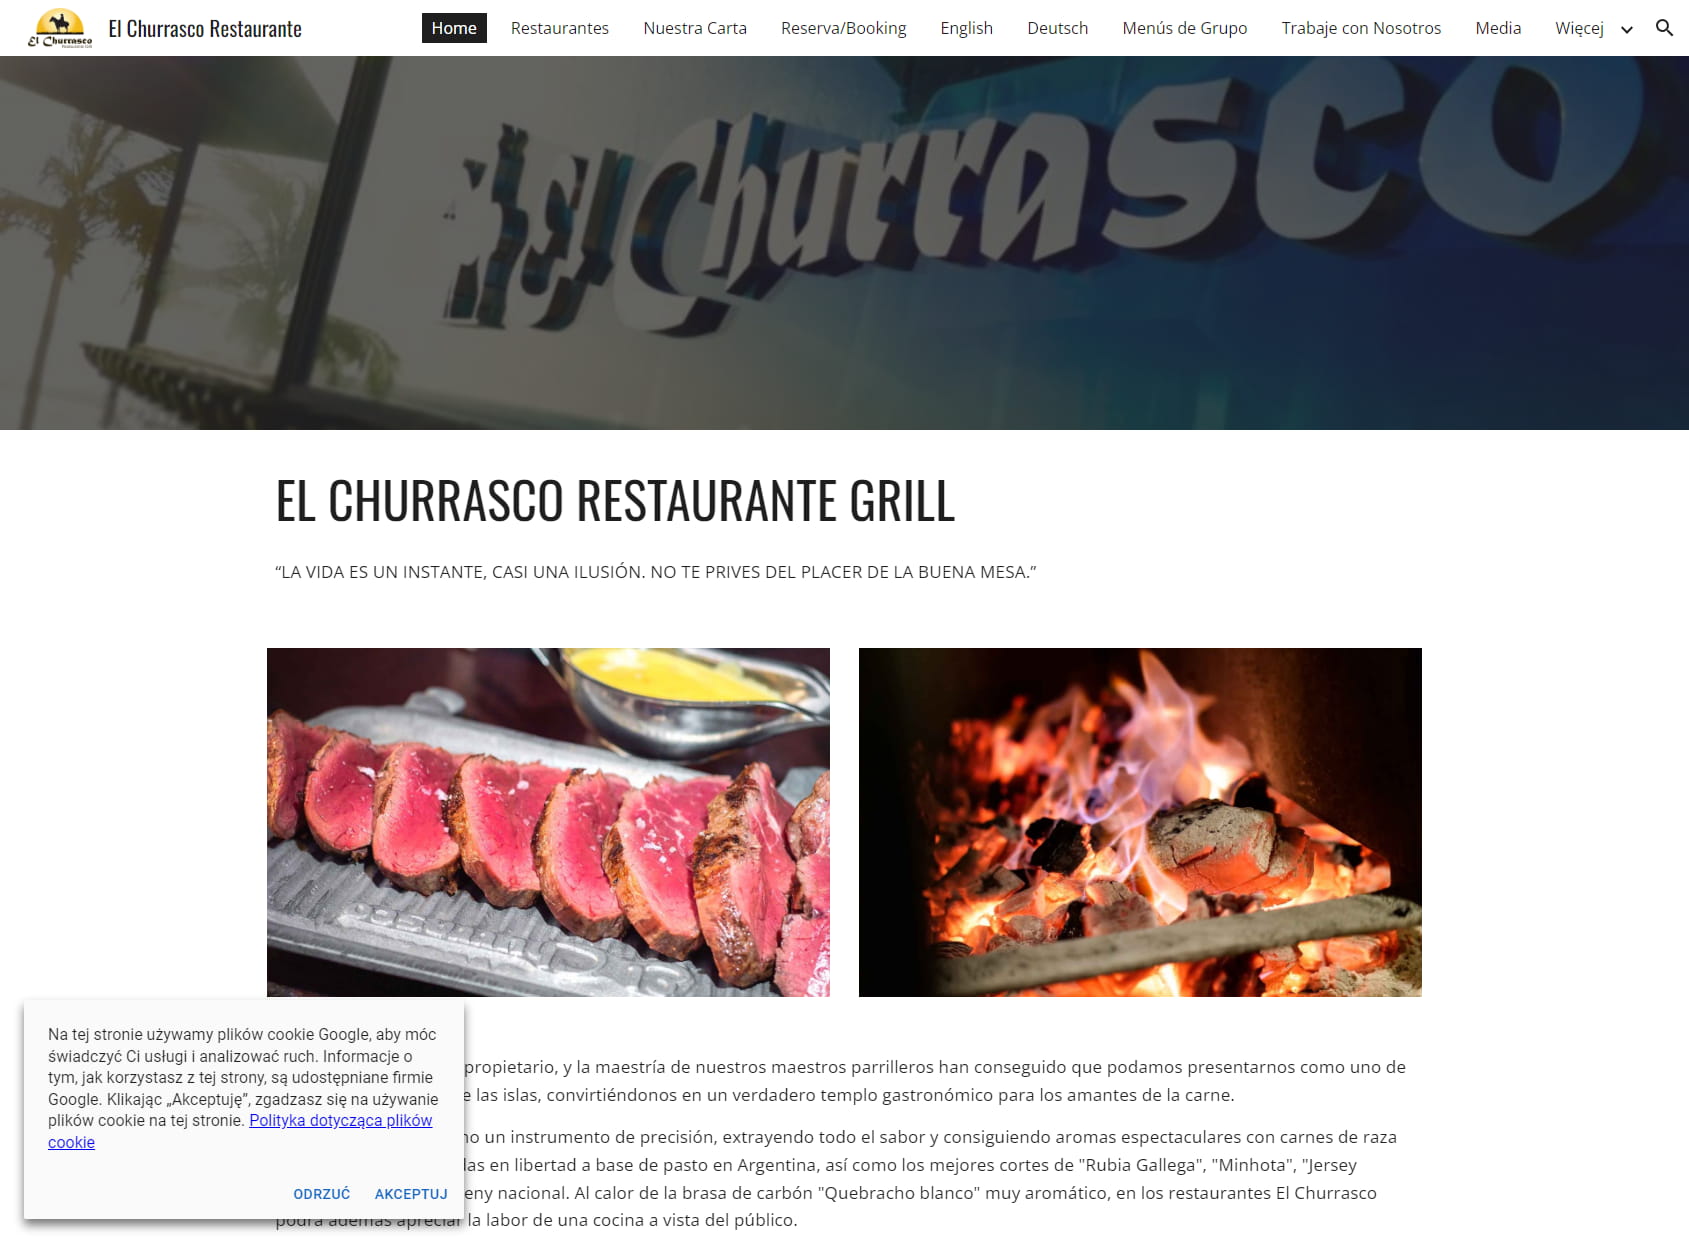 El Churrasco Las Palmas Restaurante Grill